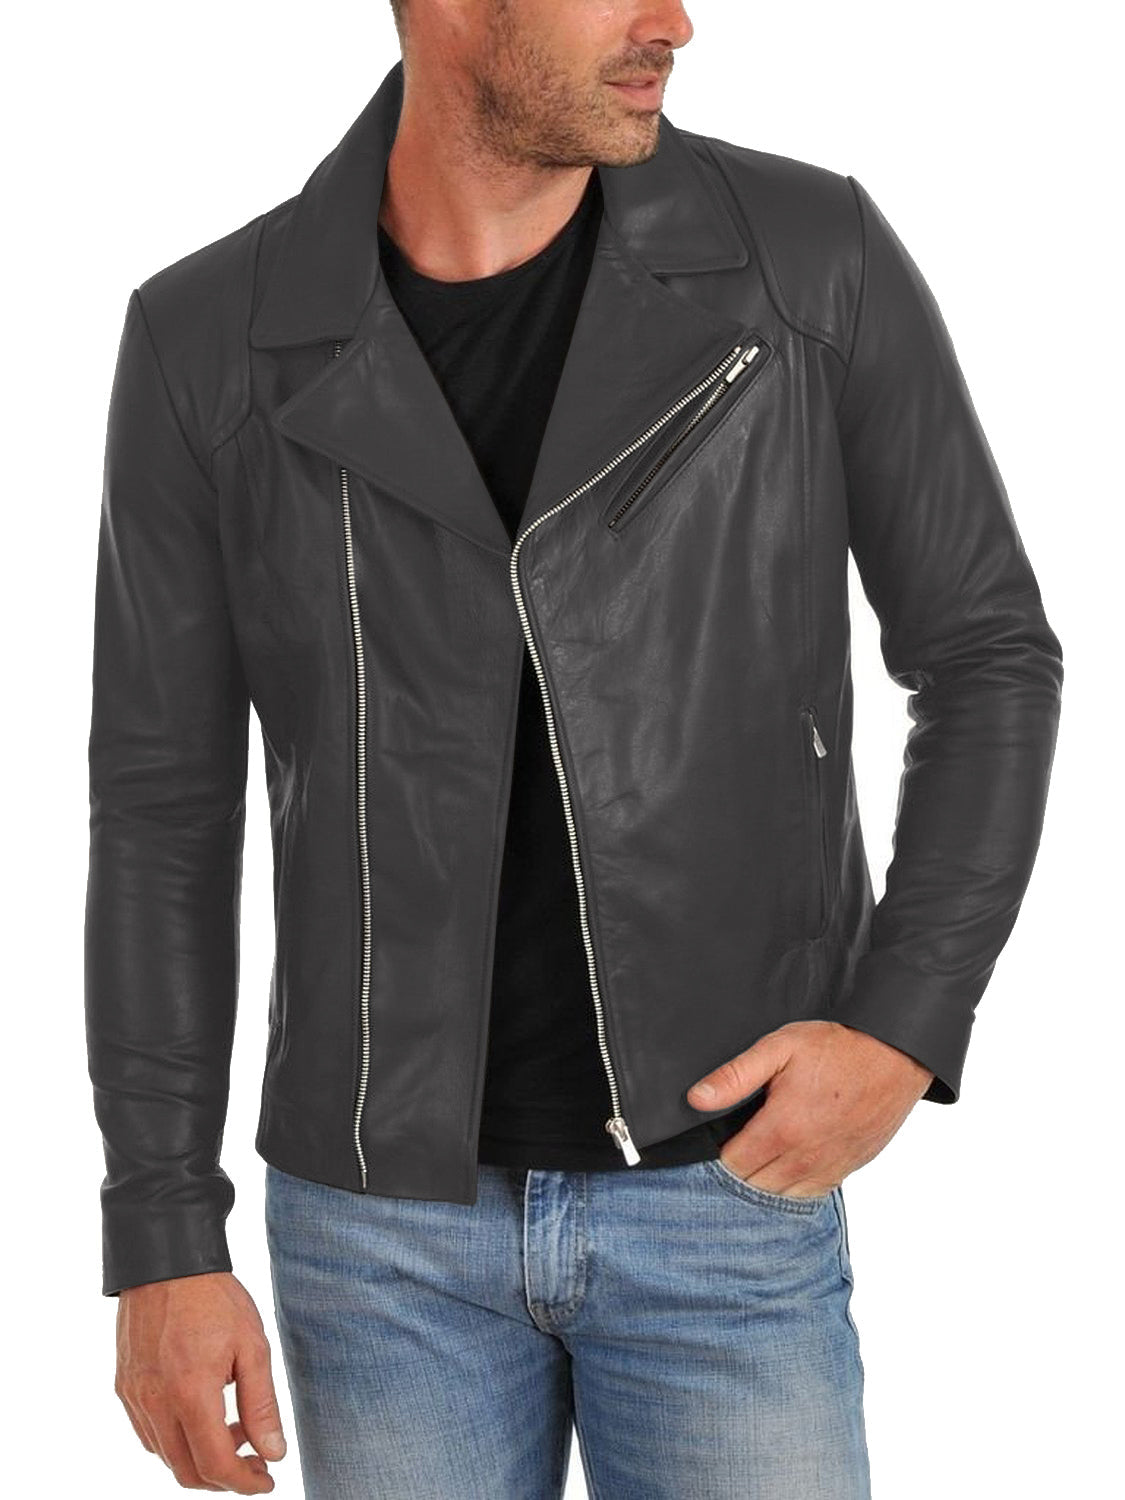 Leather Jackets Hub Mens Genuine Lambskin Leather Jacket (Black, Double Rider Jacket) - 1501260